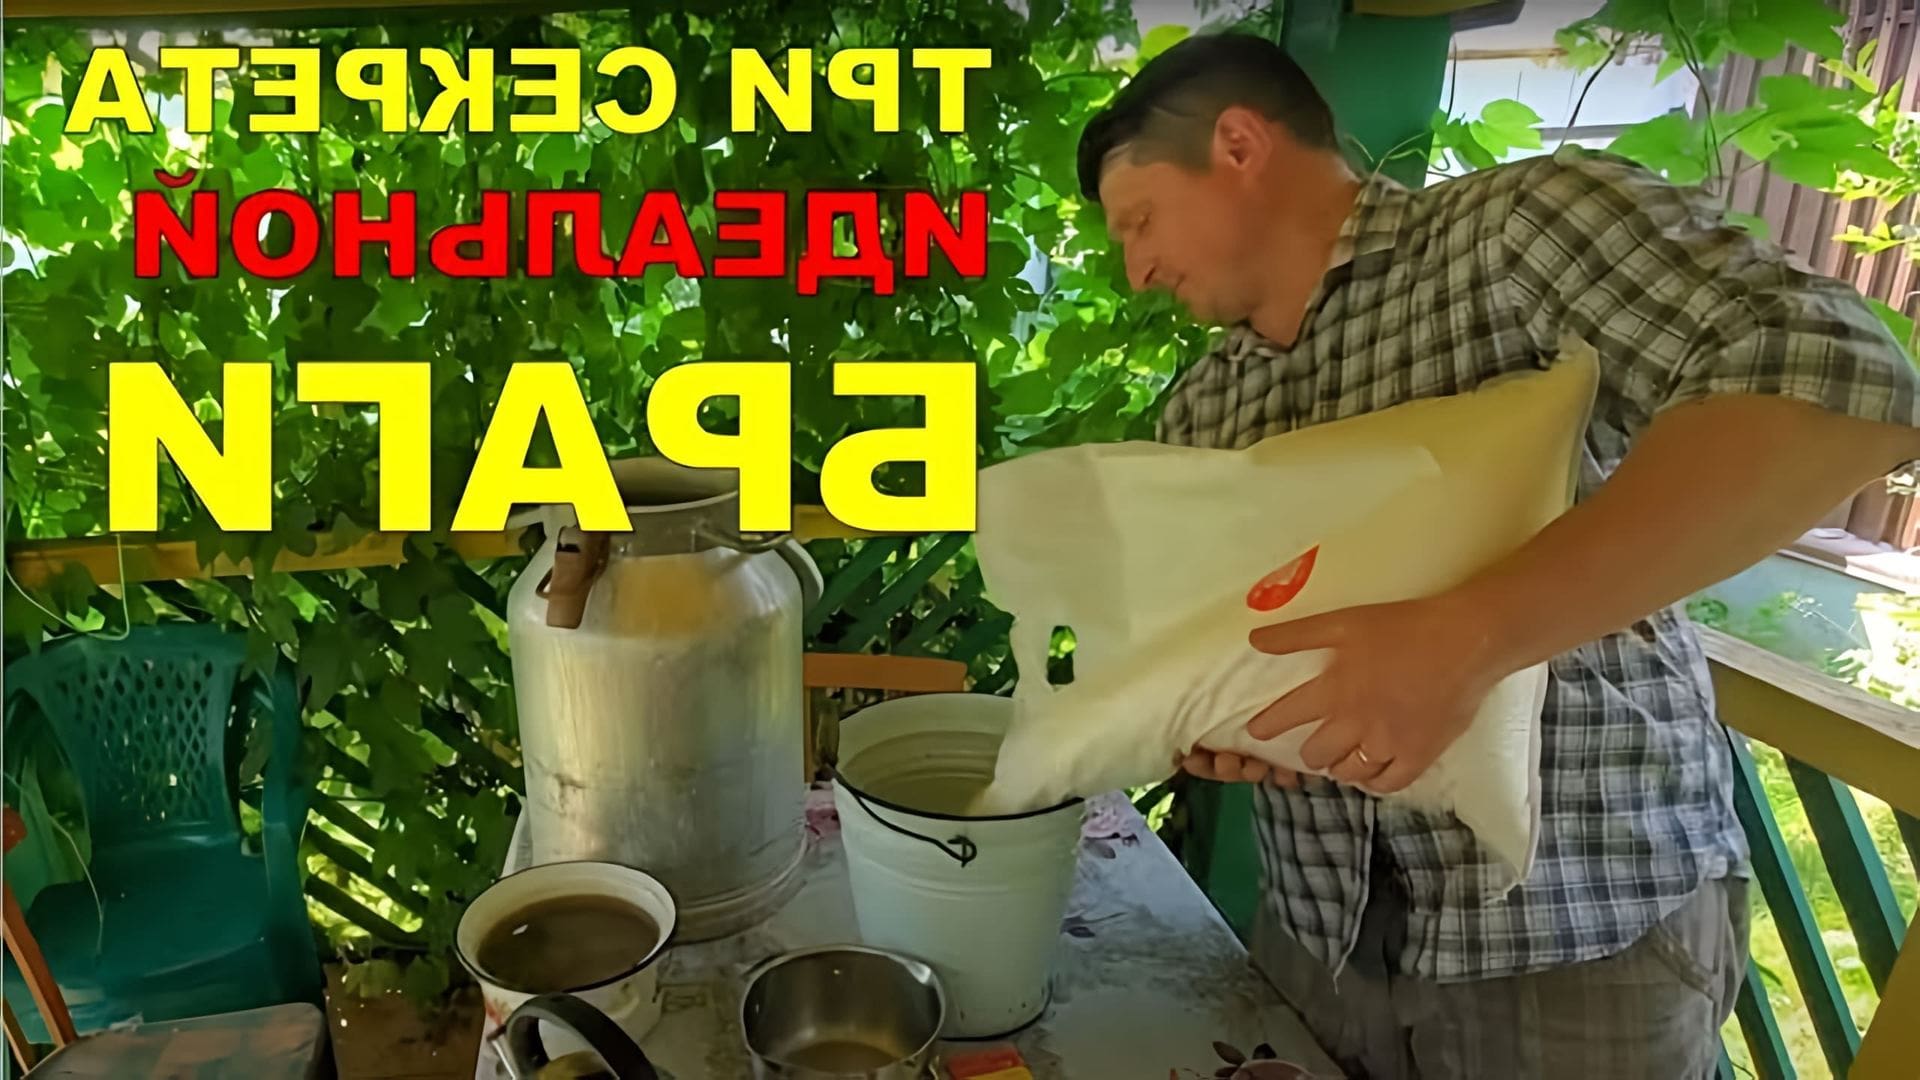 В этом видео рассказывается о процессе изготовления браги для вкусного самогона